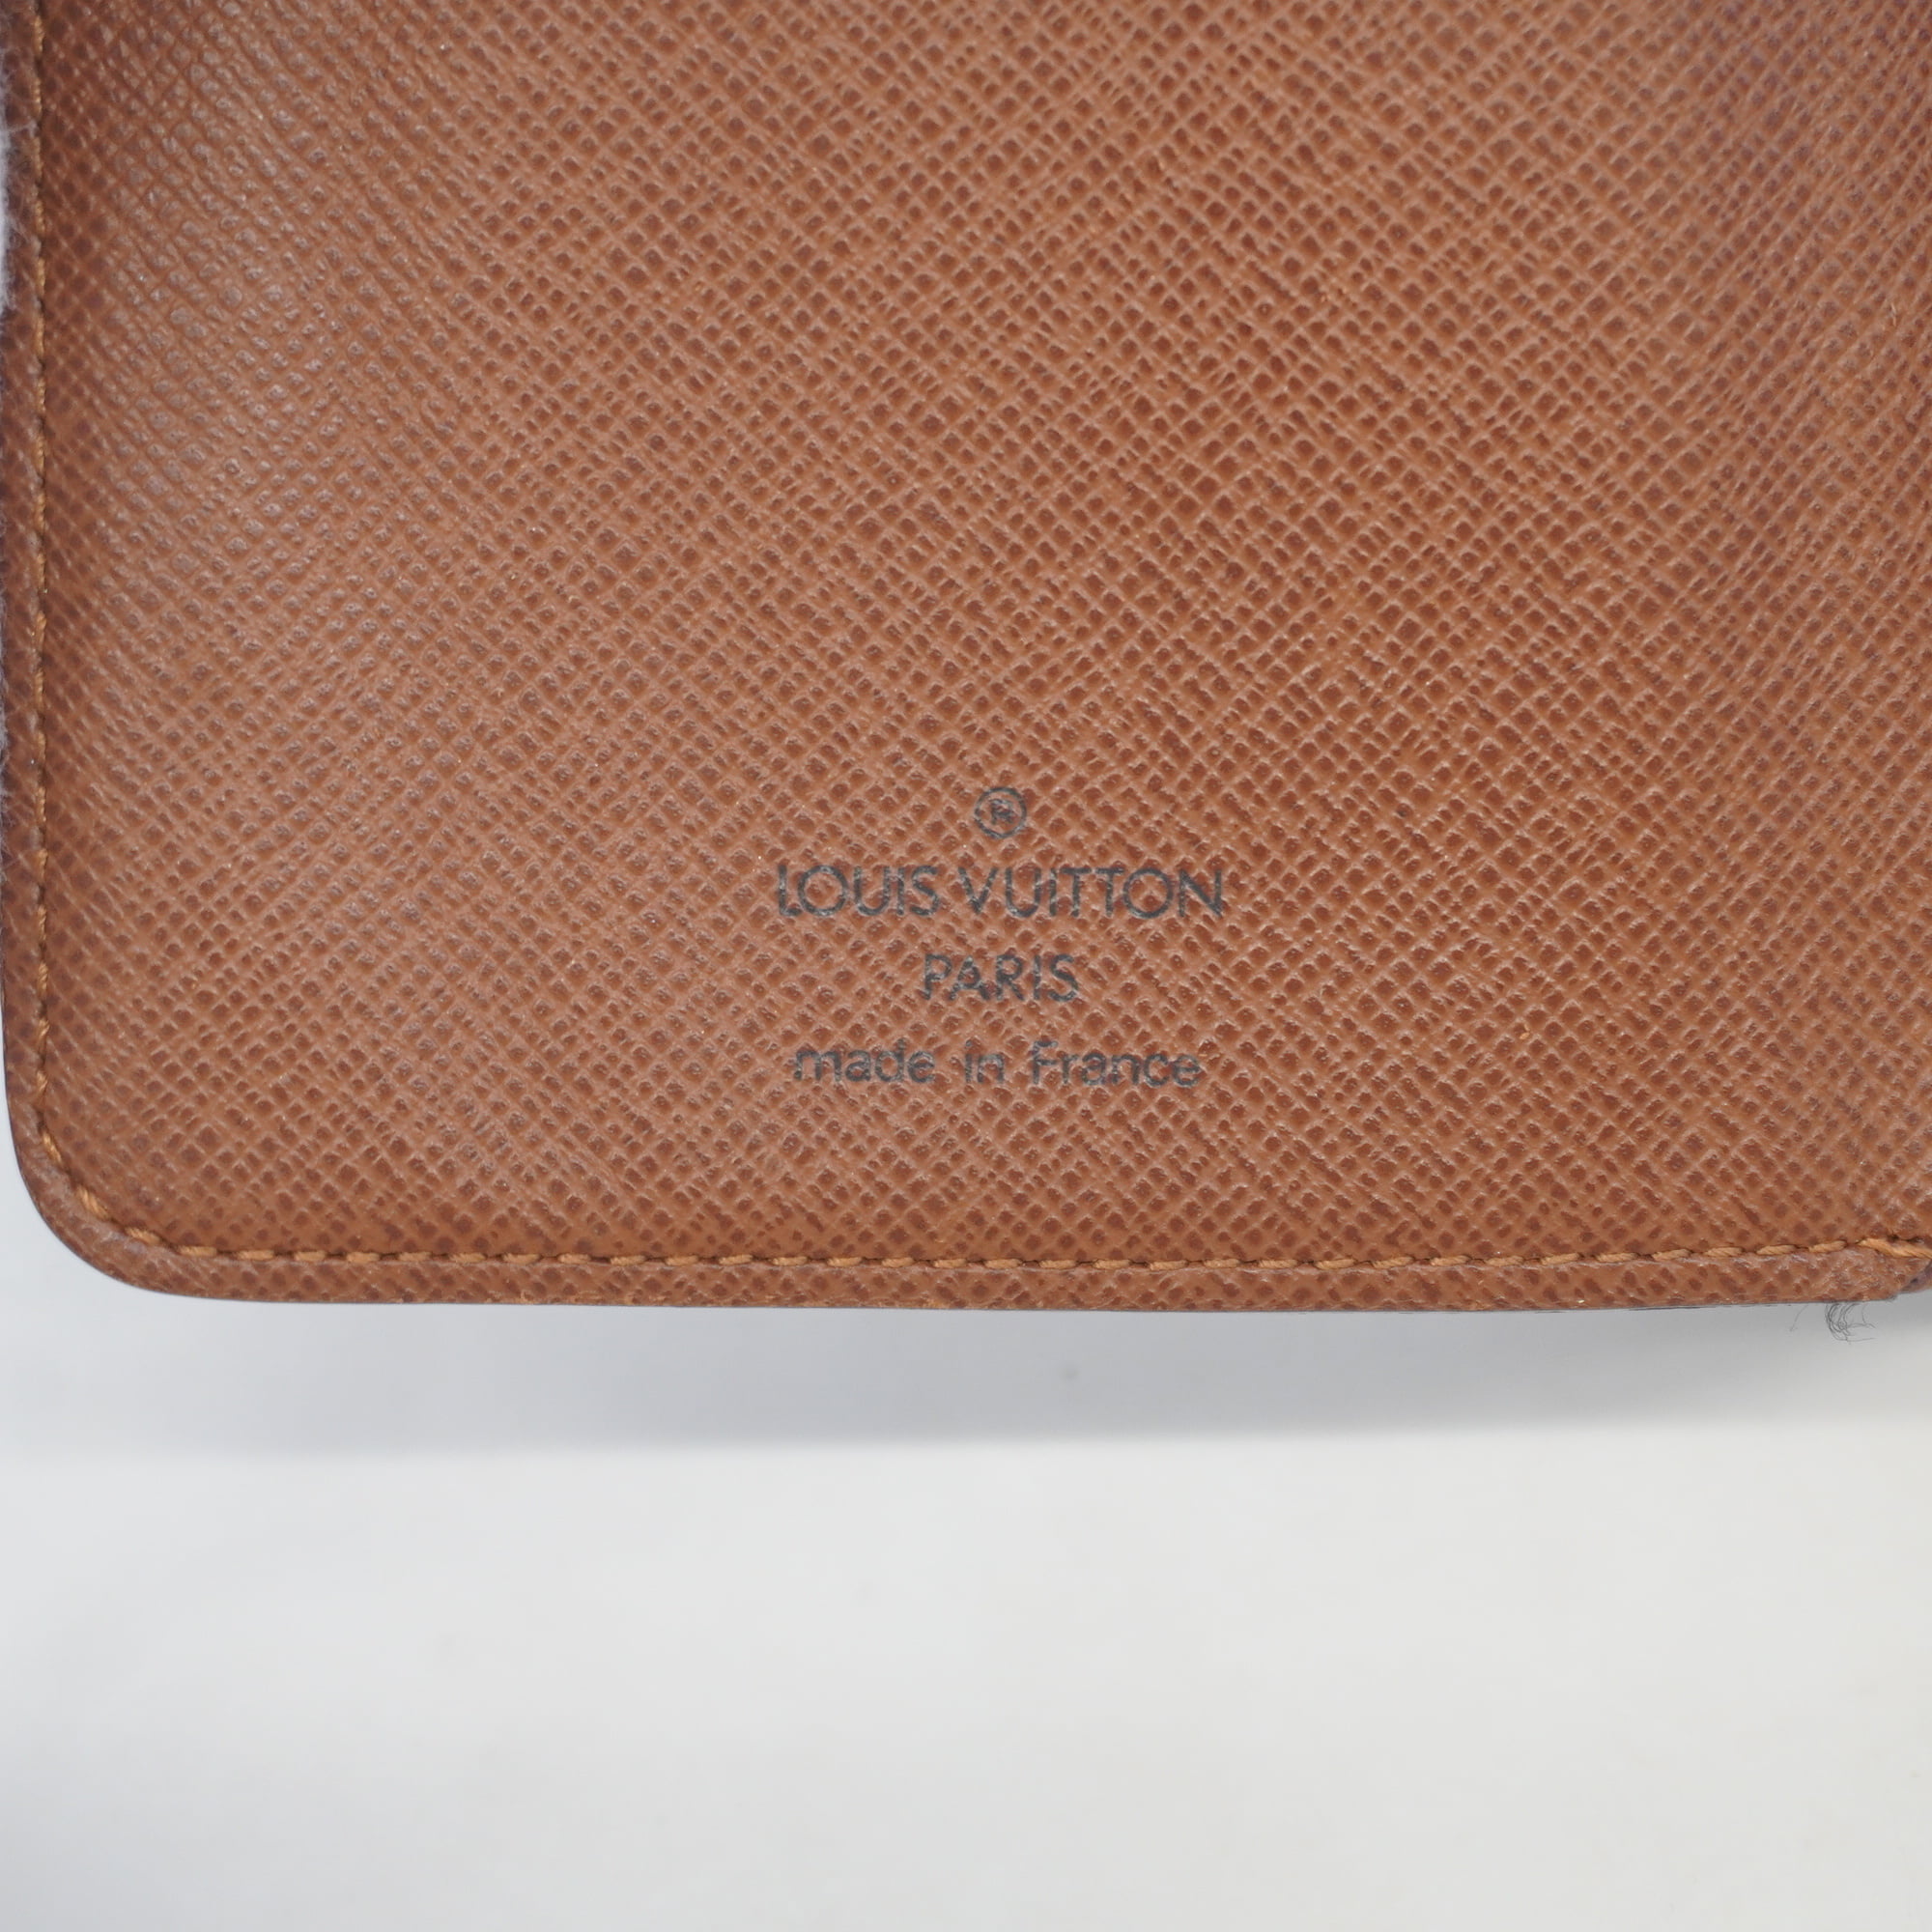 Authenticated Used LOUIS VUITTON Porto Papier Zip Bi-Fold Wallet with Pass  Case Monogram M61207 SP0025 